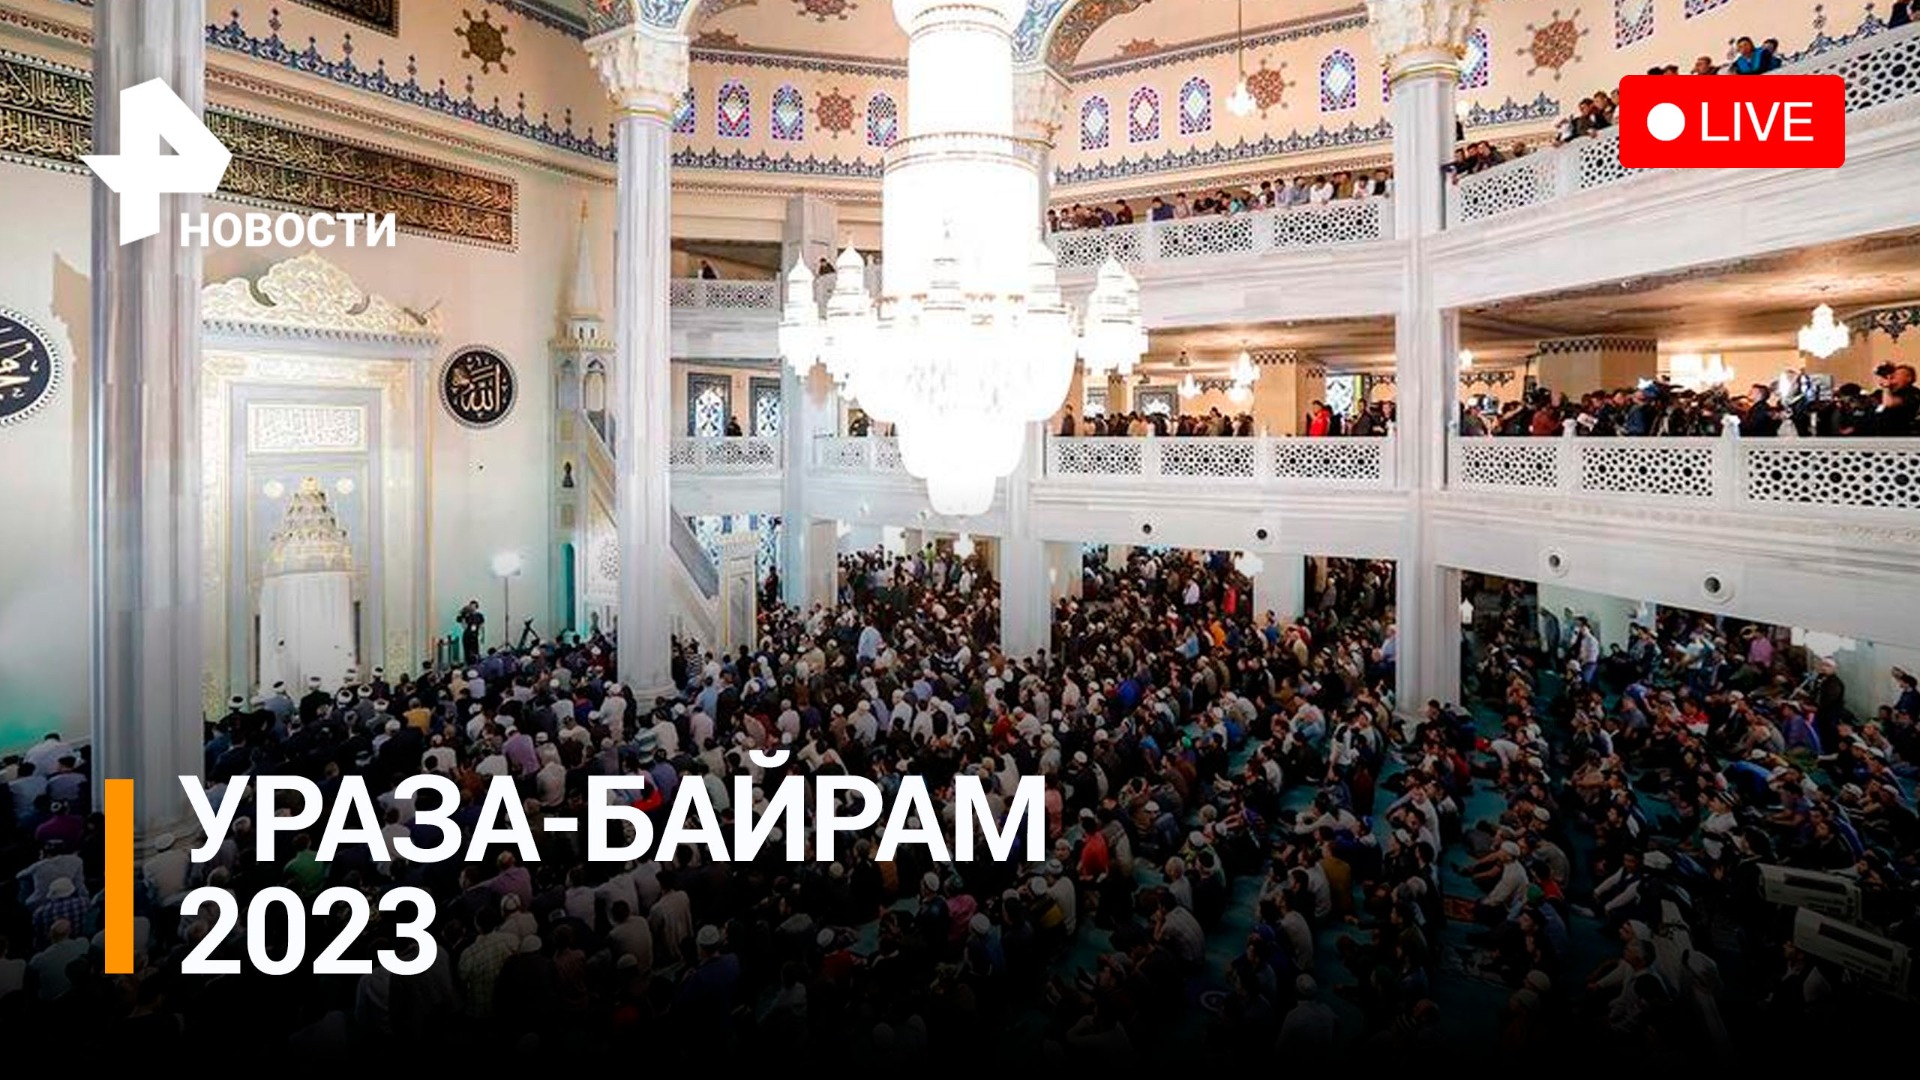 Ураза-байрам 2023: как отмечают один из главных мусульманских праздников в Москве - Прямой эфир